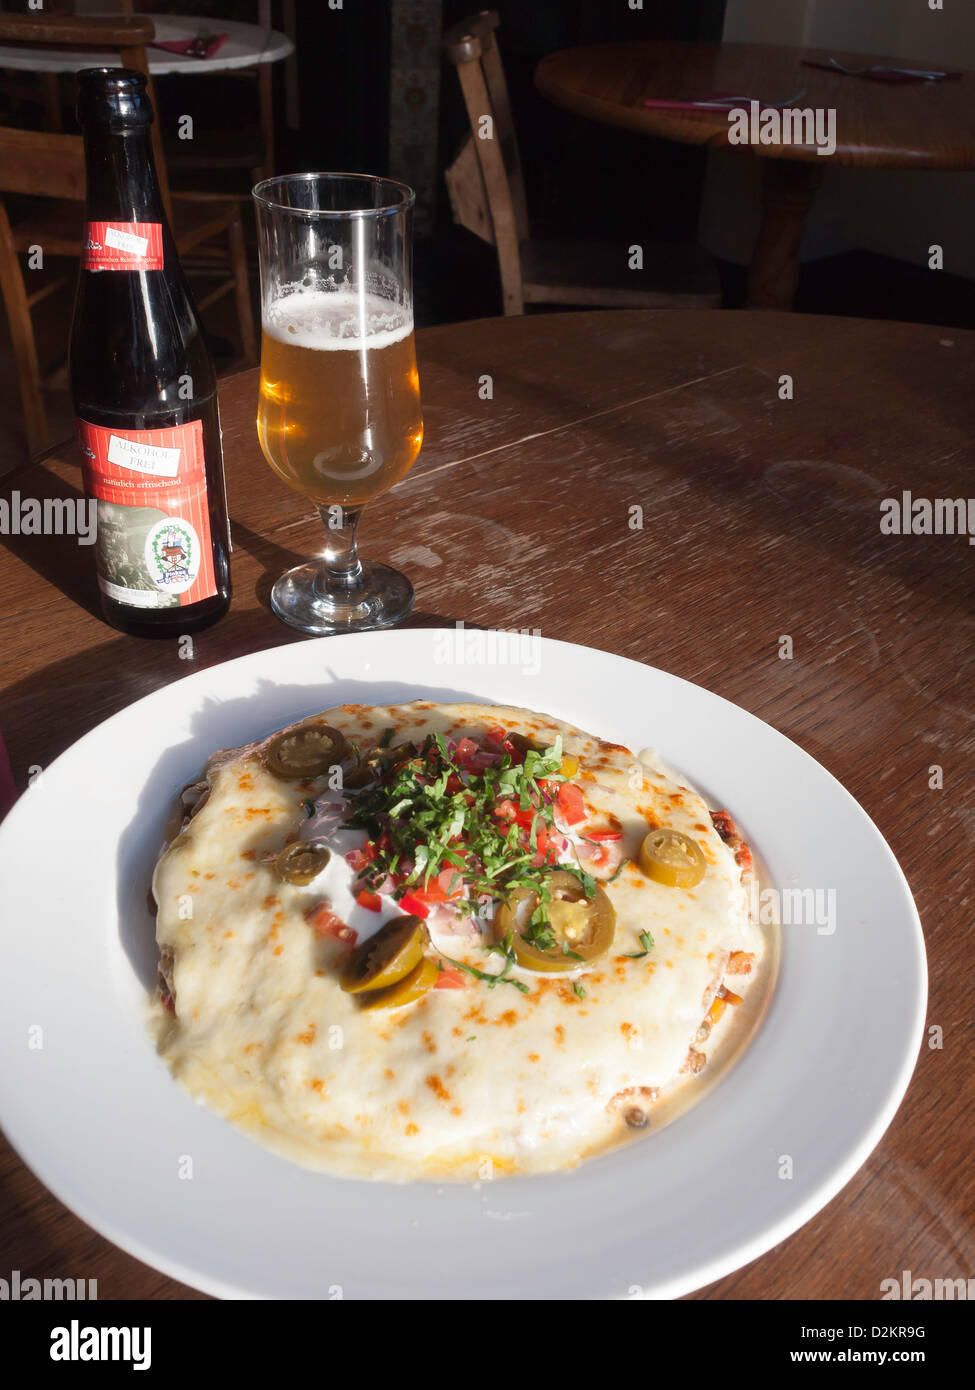 Le déjeuner de lentilles épicée tortilla de blé entier avec fromage fondu crème sure et salsa jalapeno avec un verre de bière sans alcool Banque D'Images